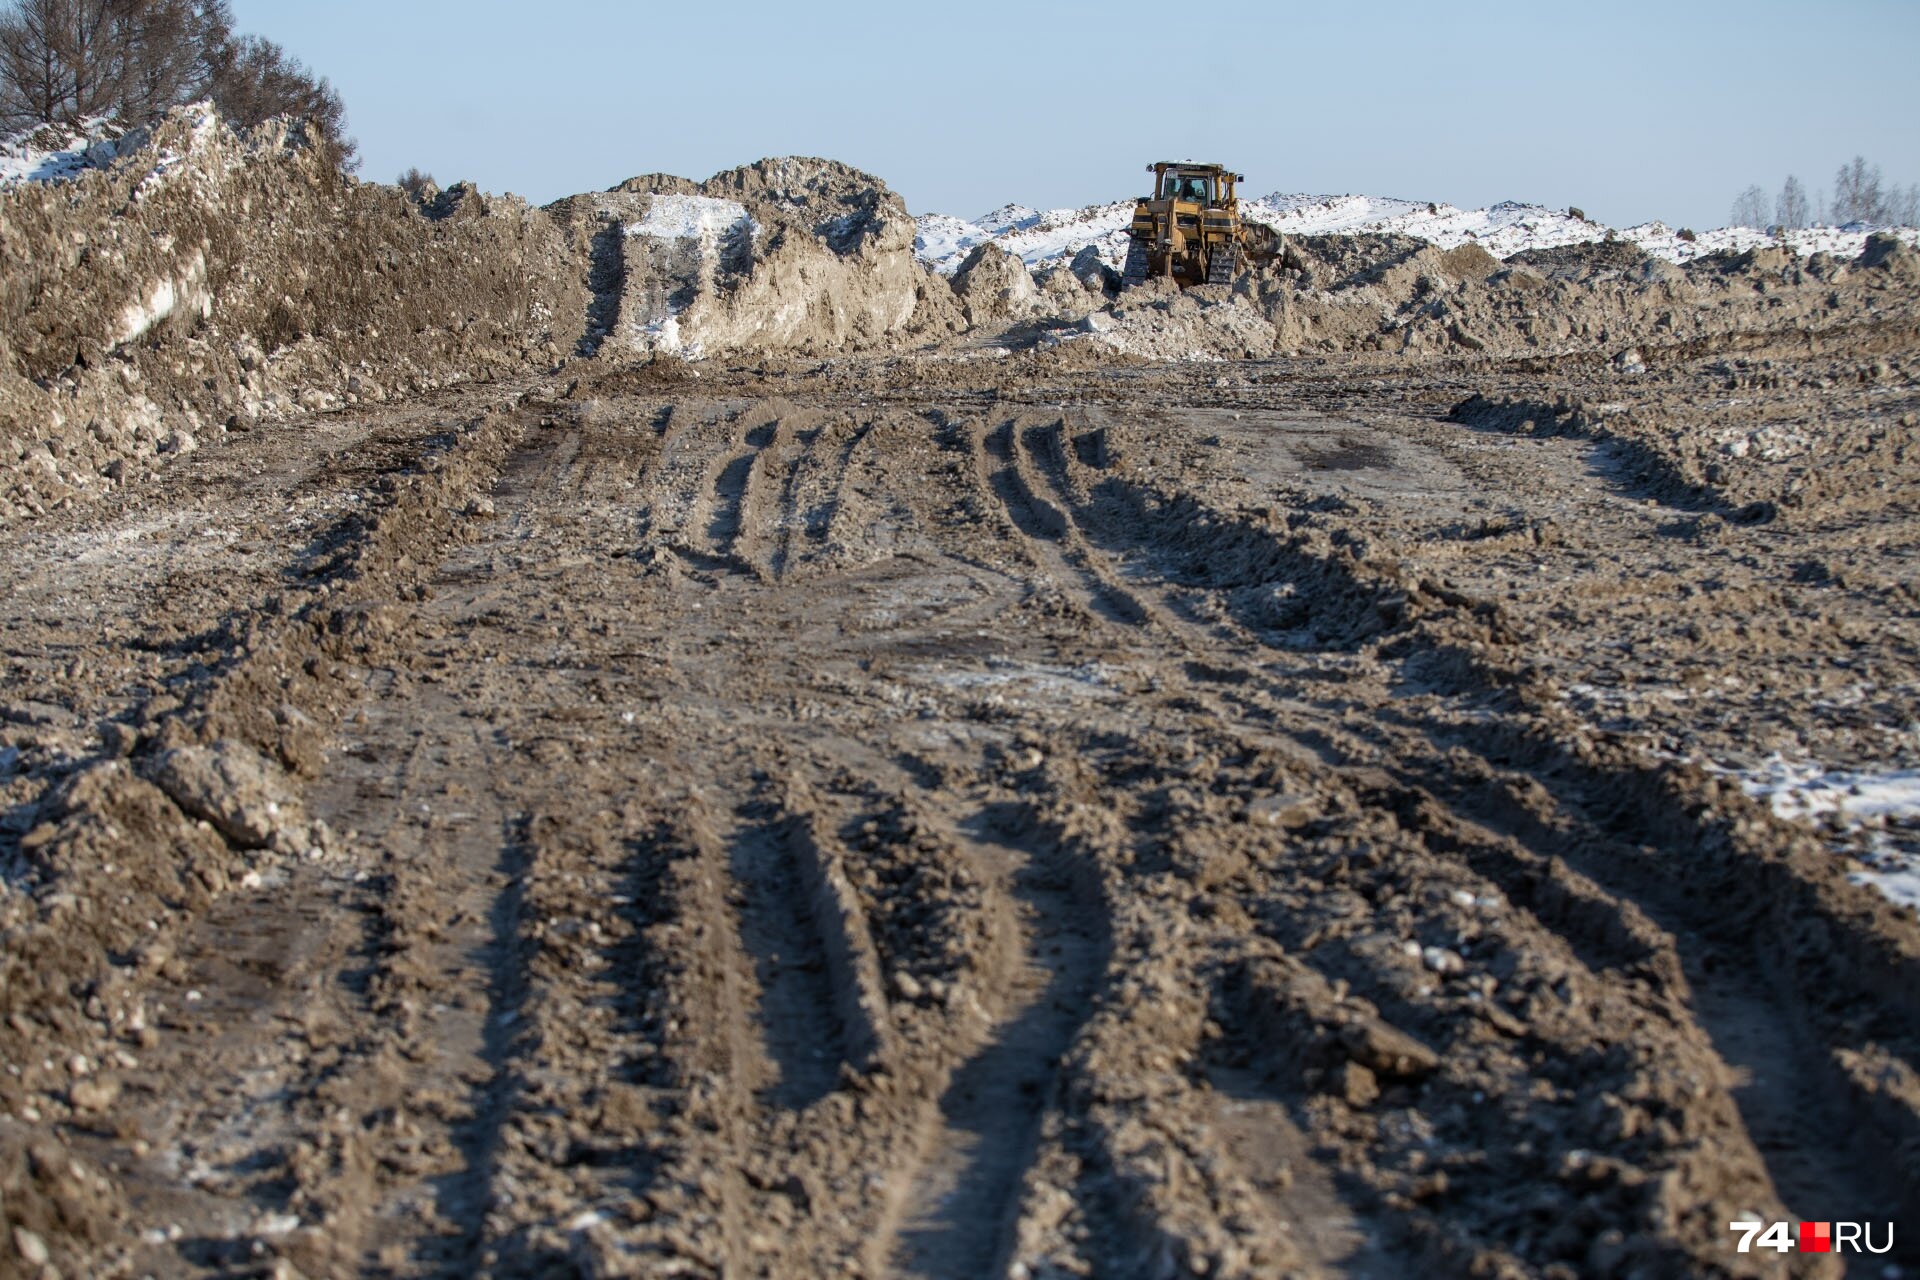 Полигон на Бродокалмакском тракте закрыли из-за недостатка места для складирования снега